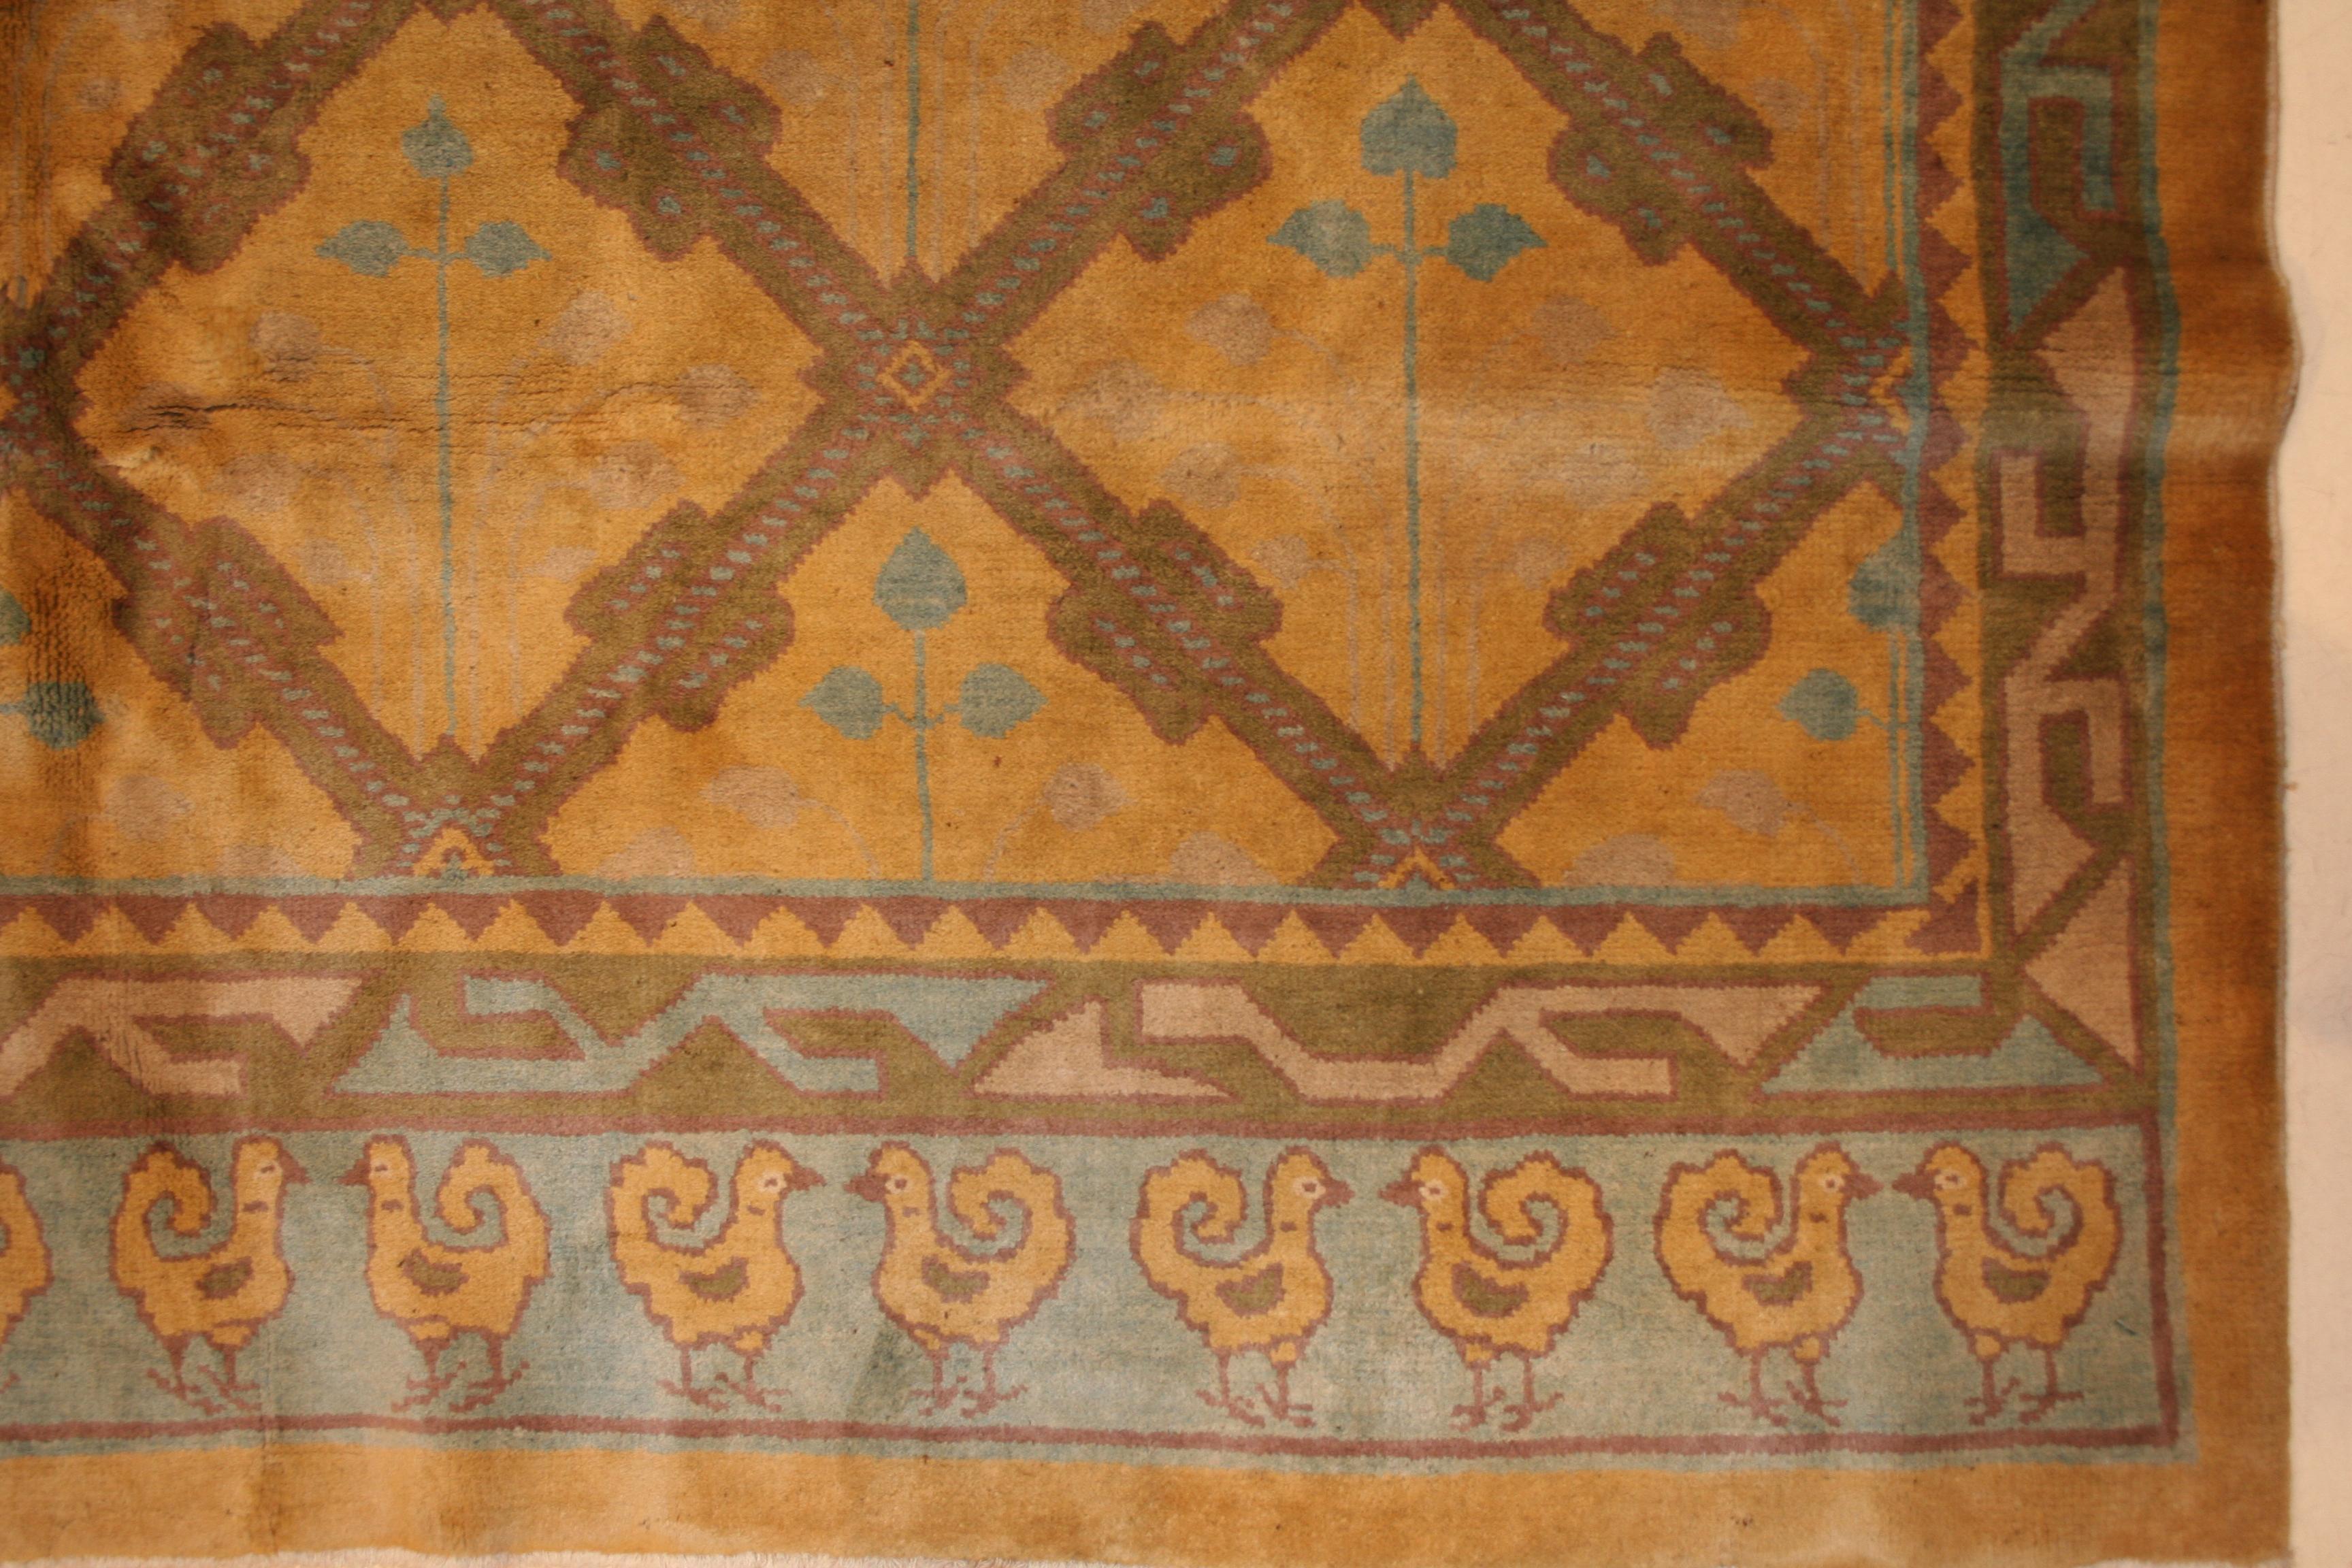 Dieser Teppich zeichnet sich durch ein ungewöhnliches All-Over-Gittermuster auf zart zitronengelbem Grund aus und ist ein Beispiel für den Eklektizismus chinesischer Webereien in der ersten Hälfte des 20. Jahrhunderts, der häufig durch geometrische